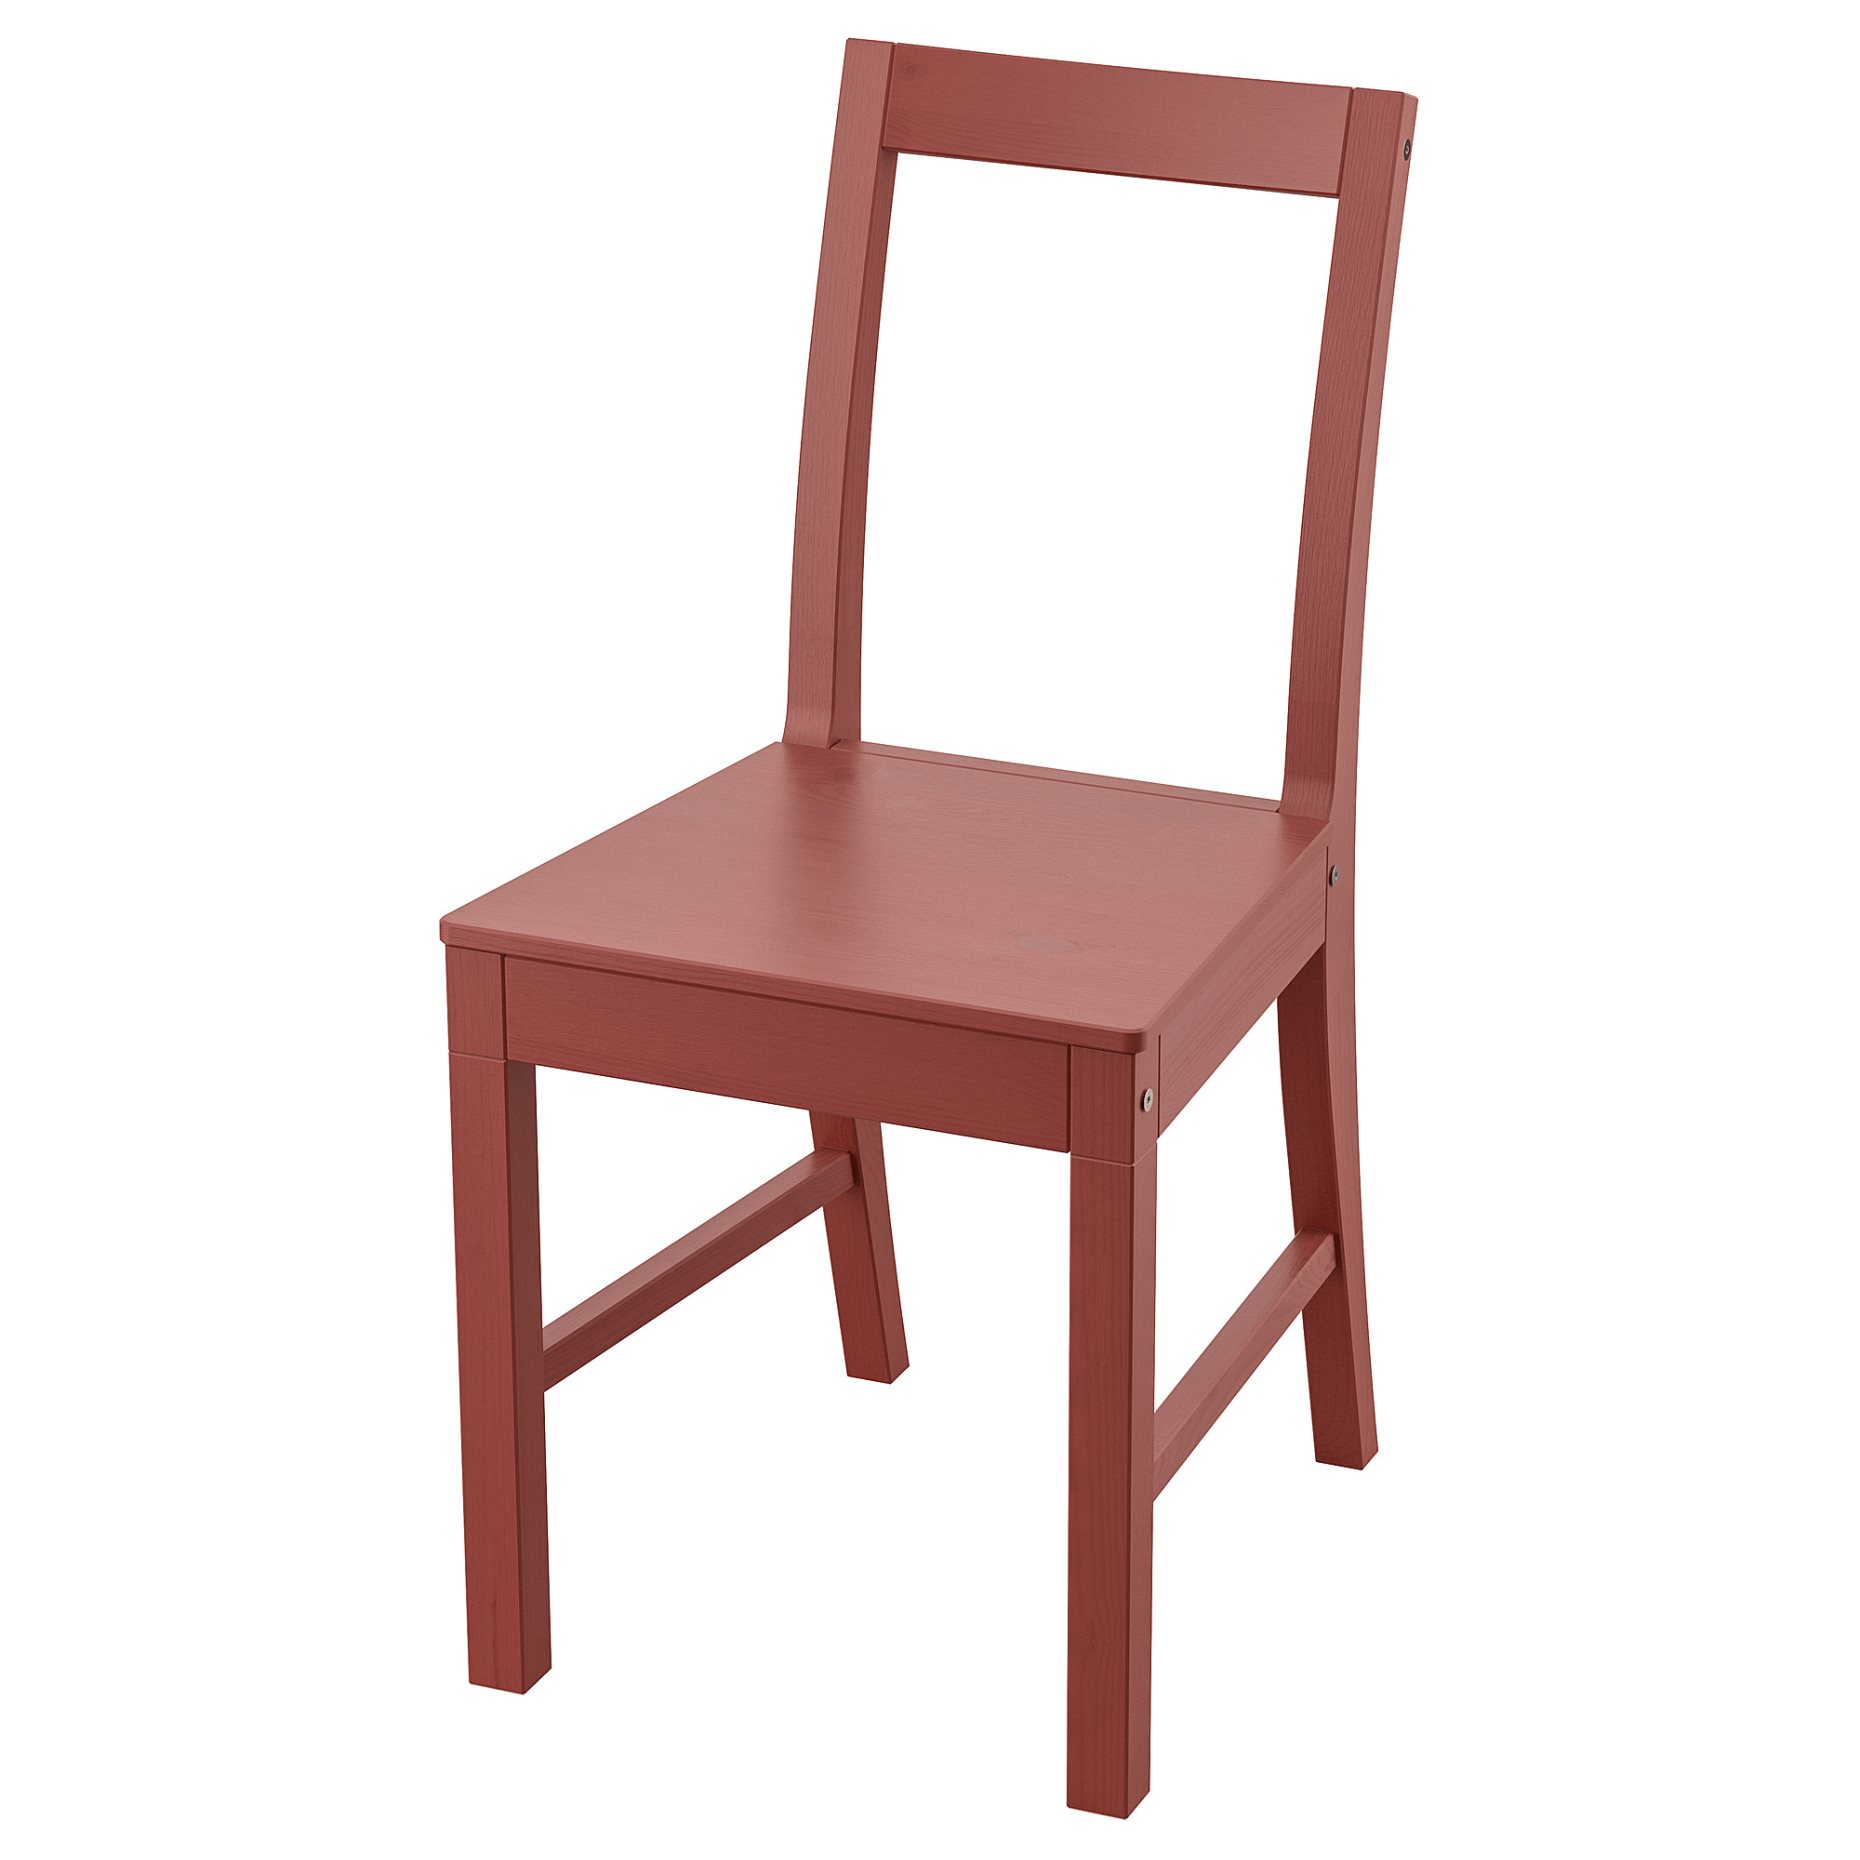 PINNTORP, chair, 405.294.76